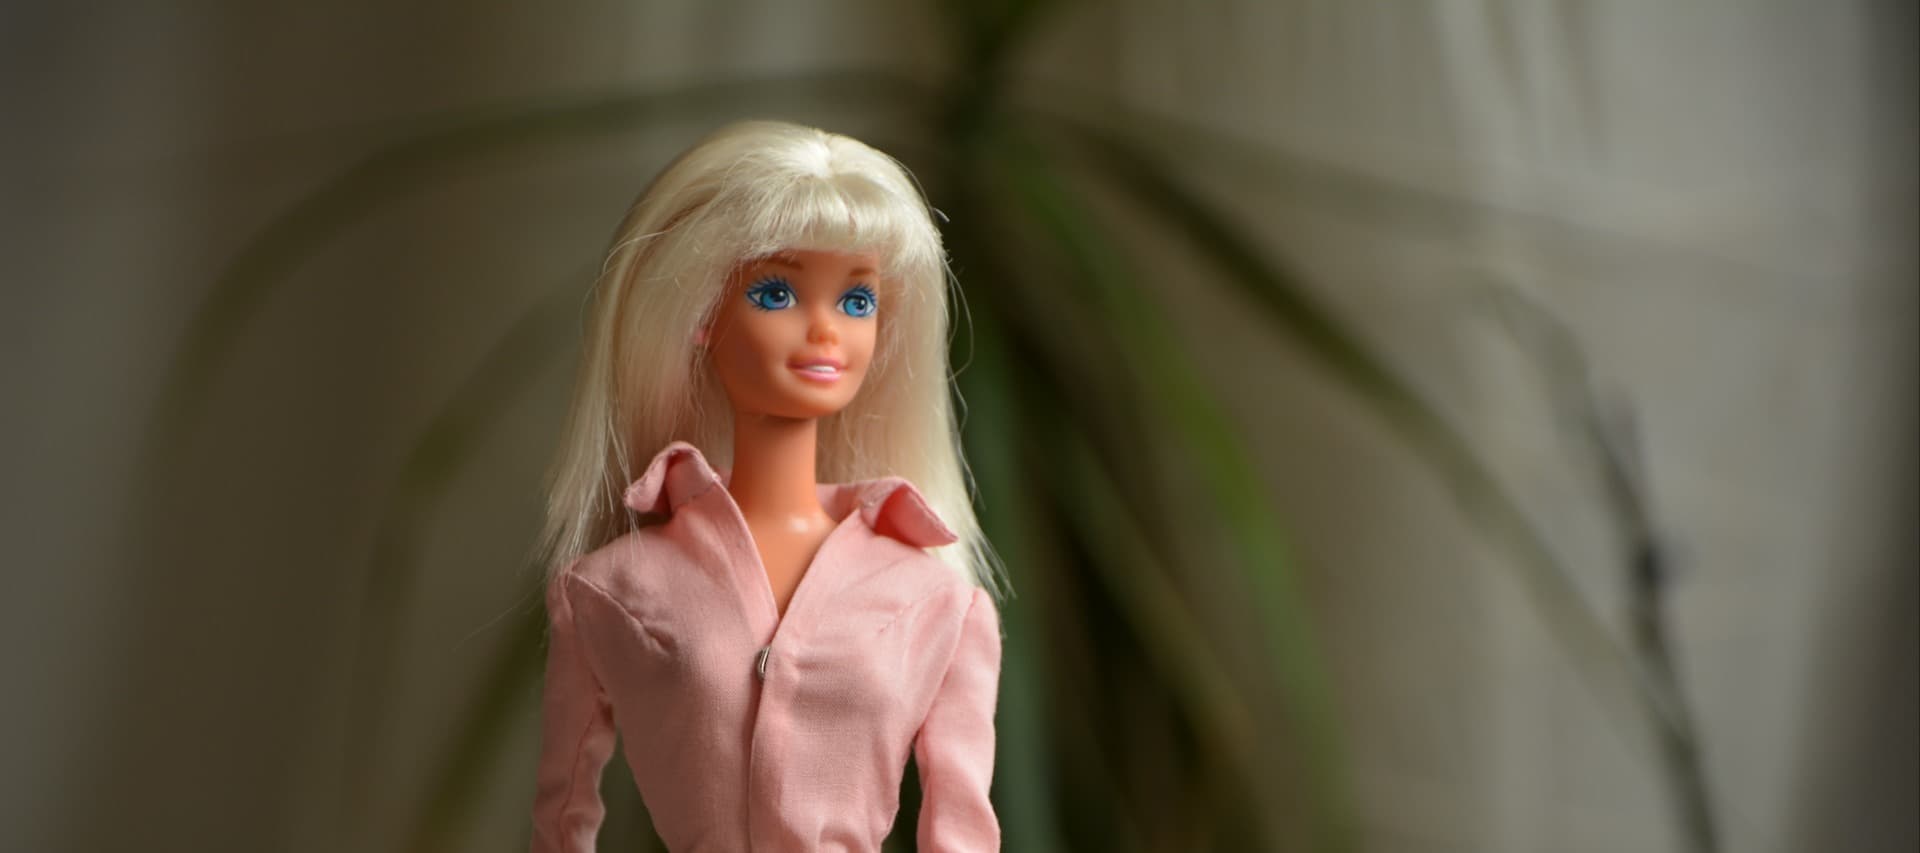 Фото новости: "Роскачество проверит кукол Барби и красную икру"